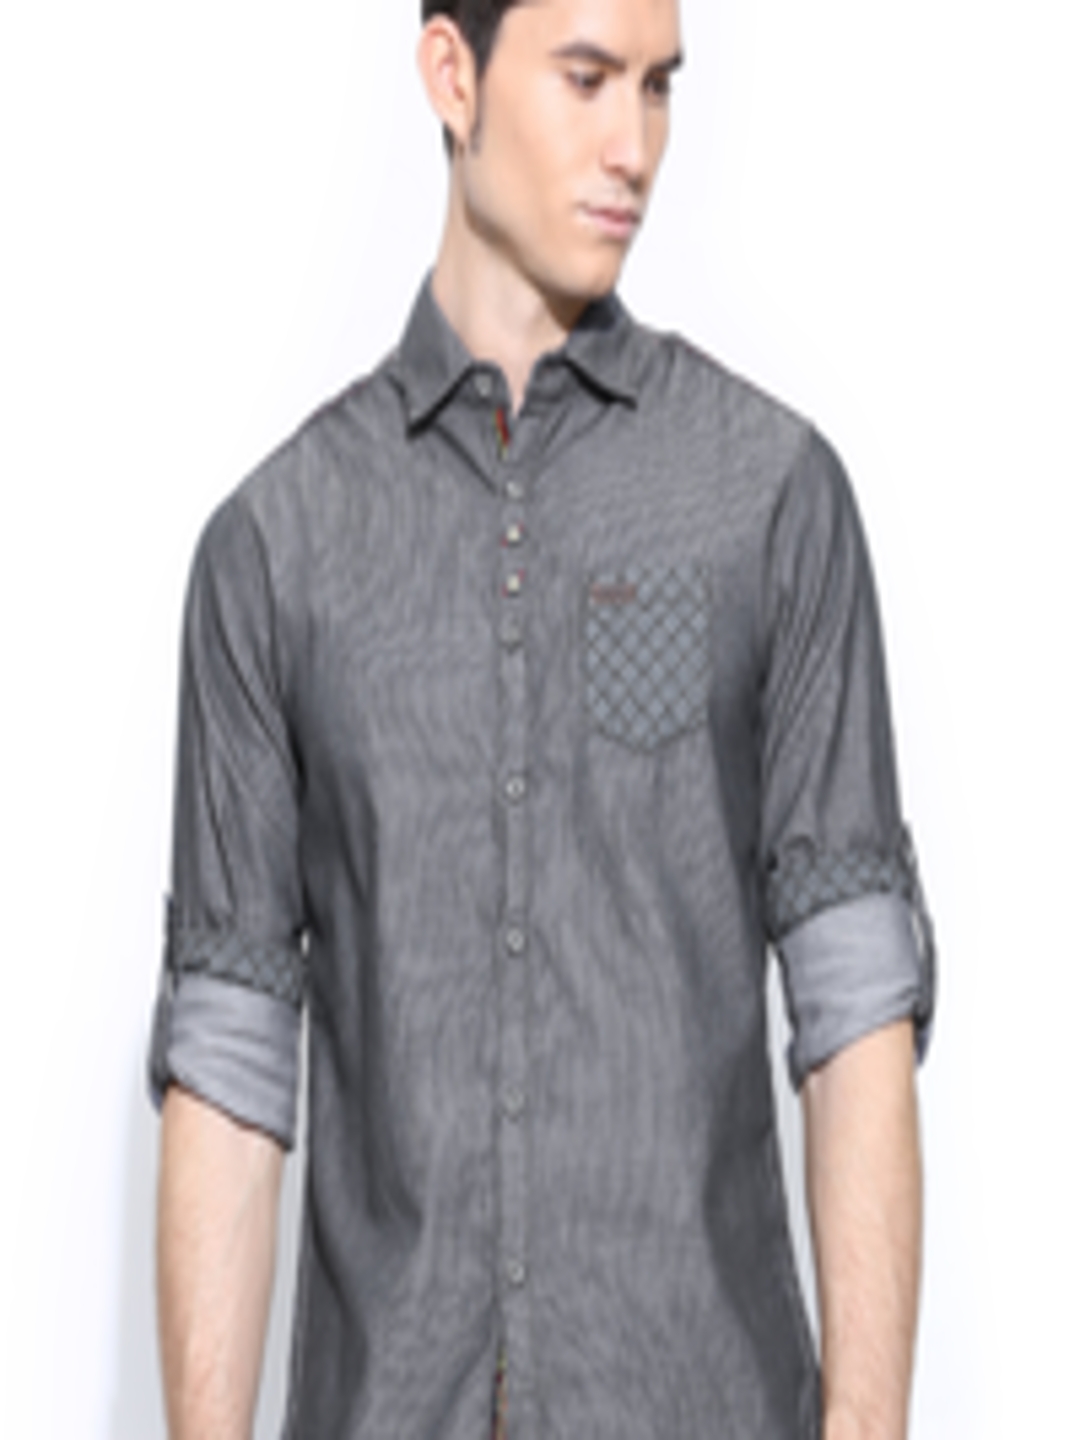 Buy The Indian Garage Co Men Grey Striped Casual Shirt - Shirts for Men ...